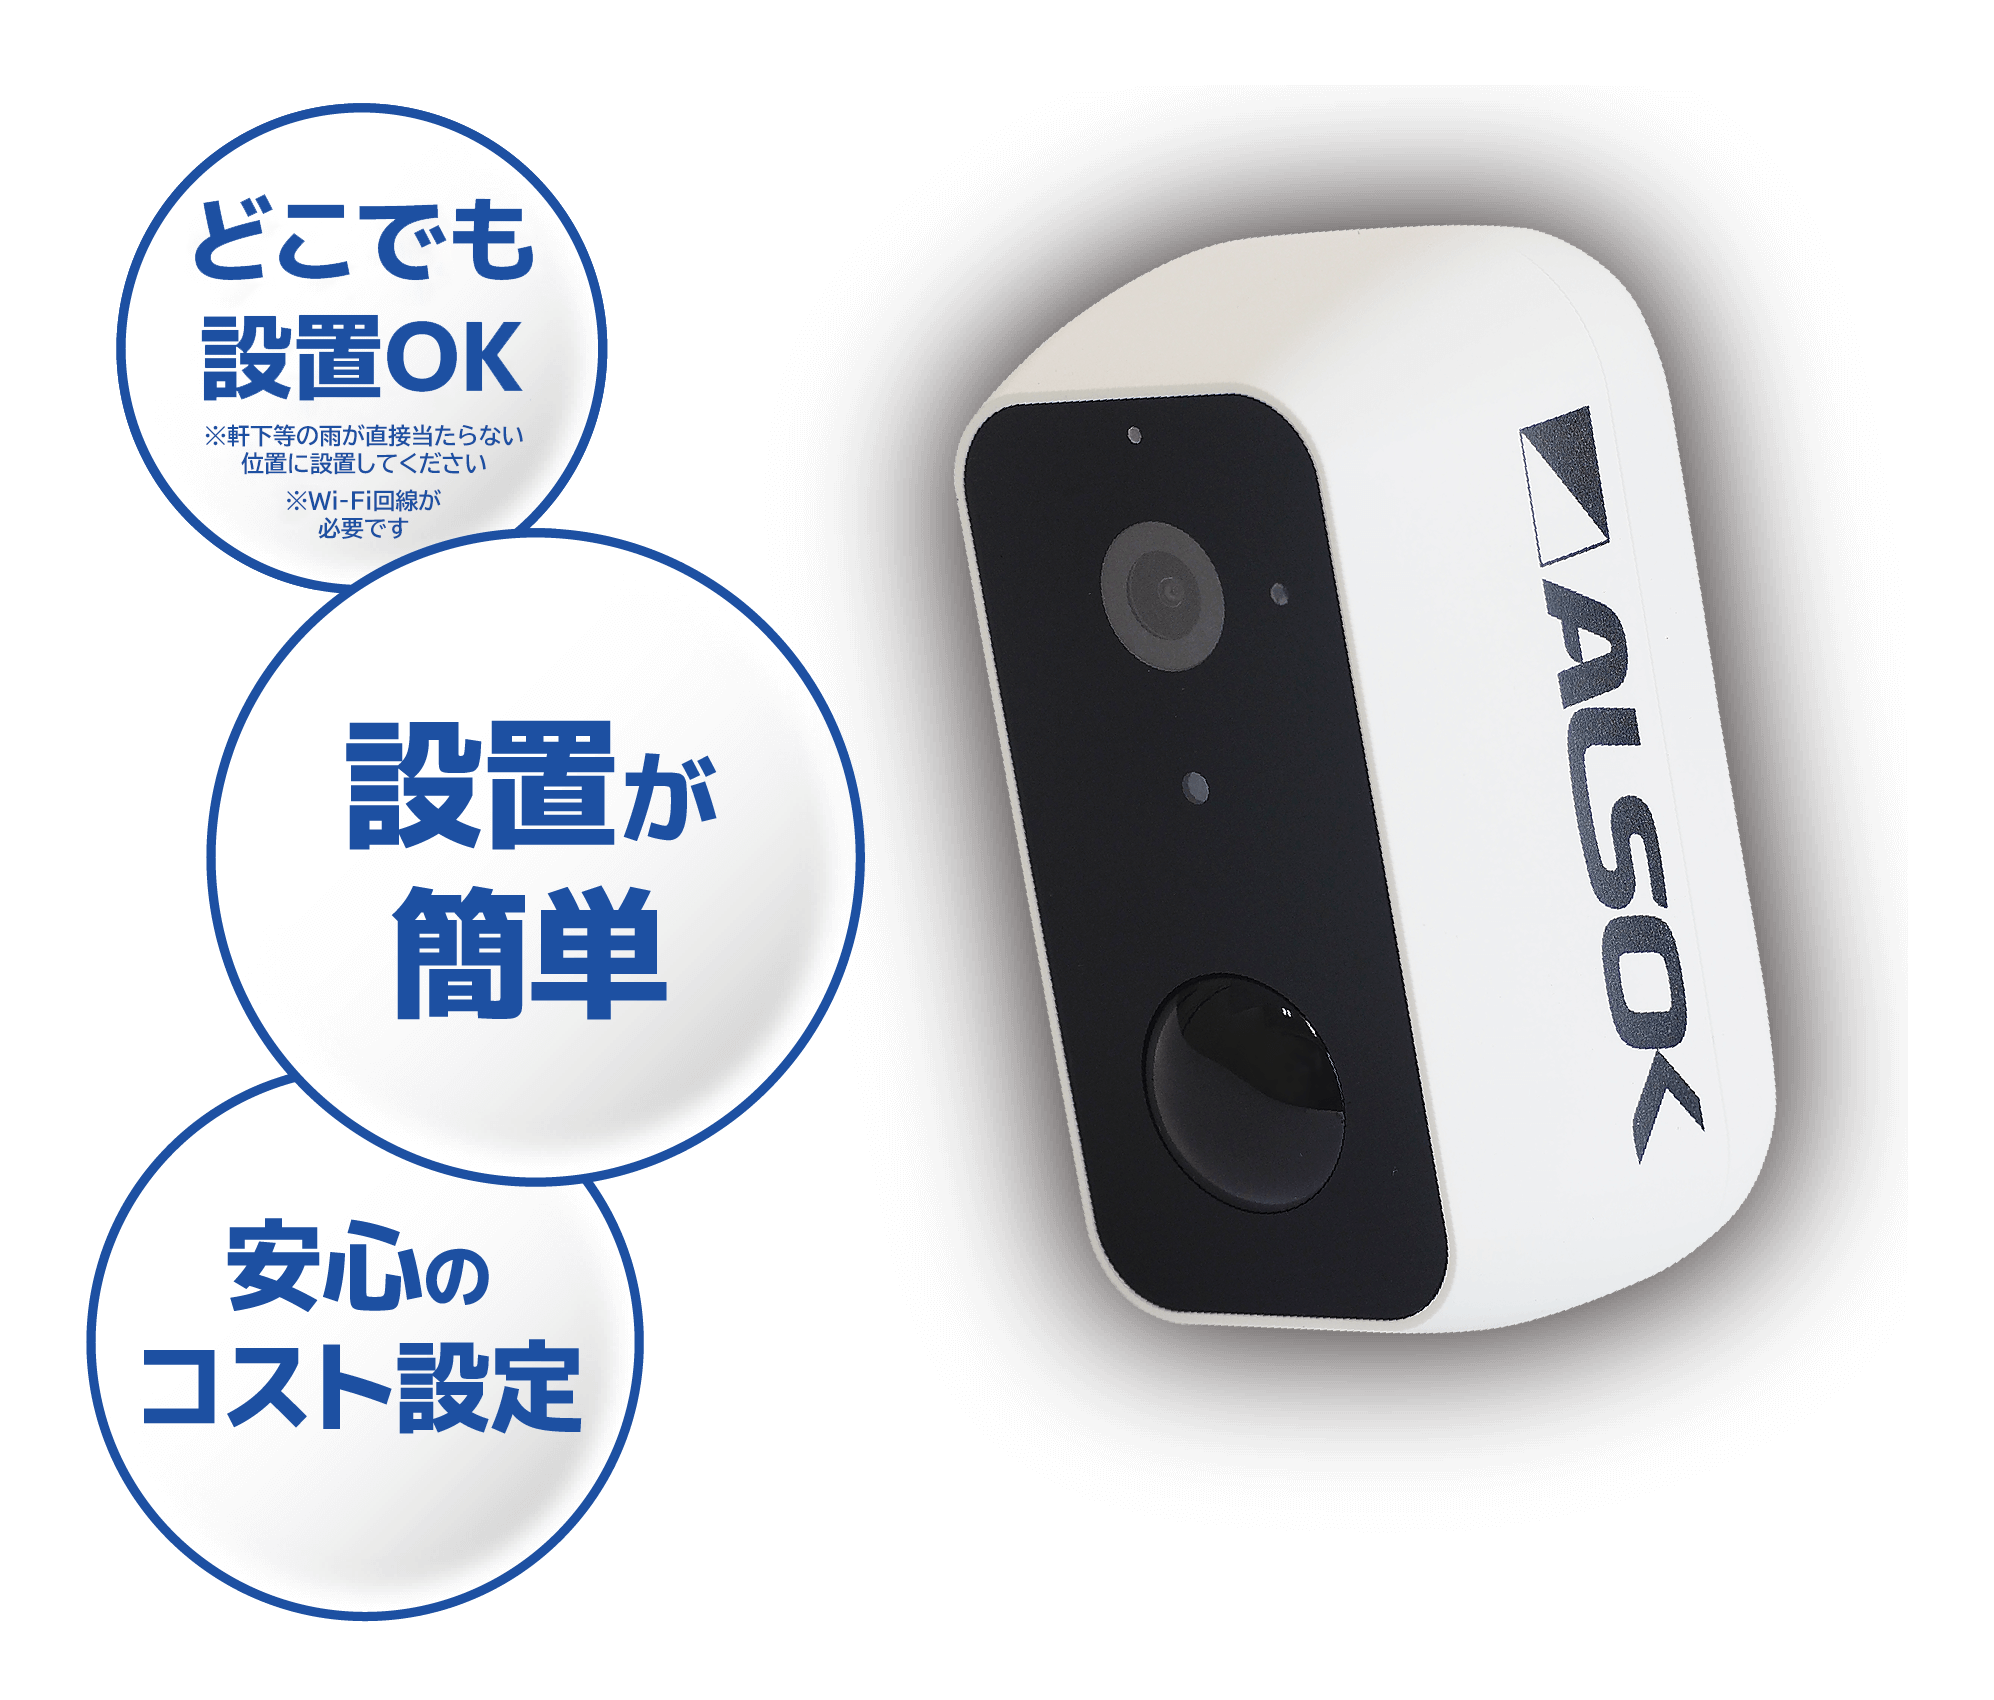 2月中出品ALSOK IP-C730 屋外対応無線式防犯カメラネットワーク対応-